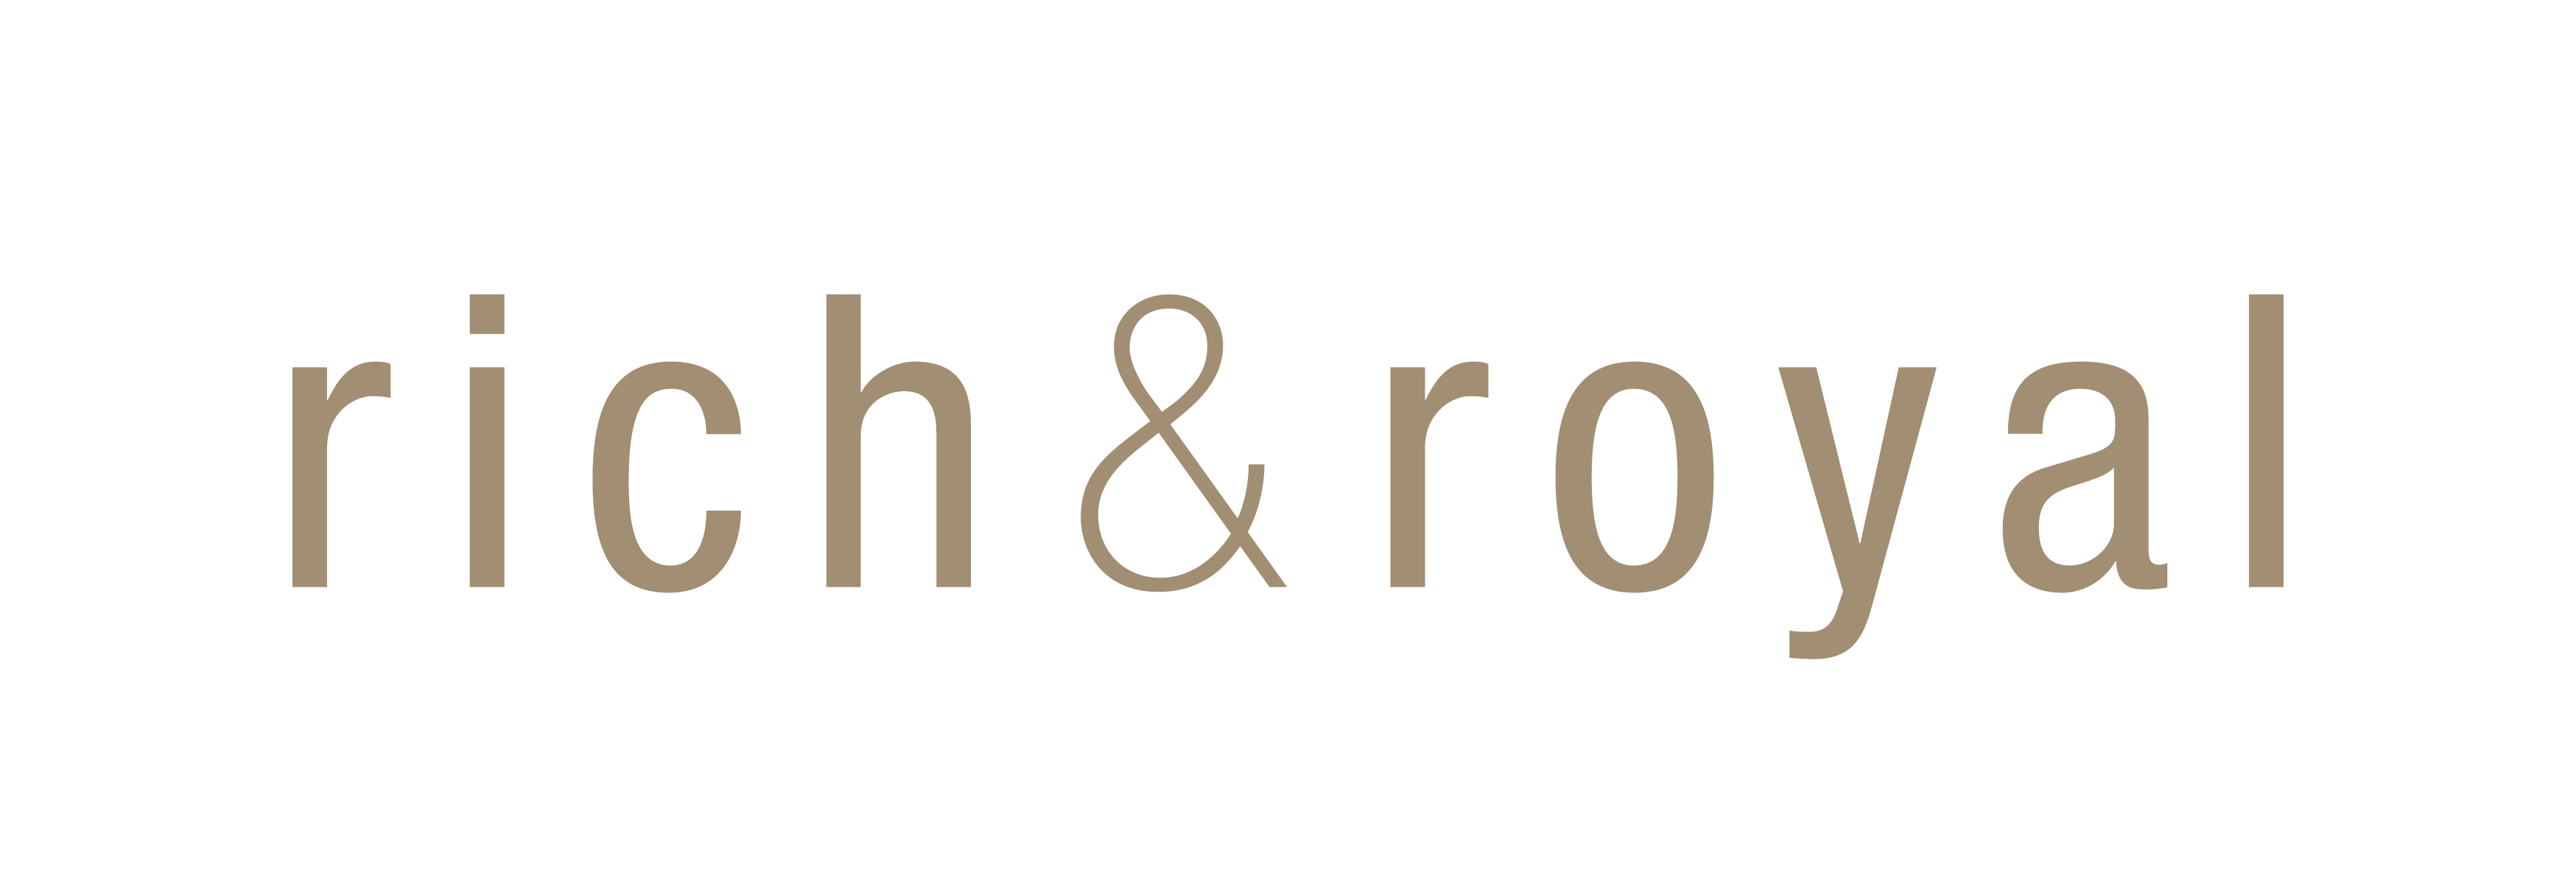 rich & royal Logo